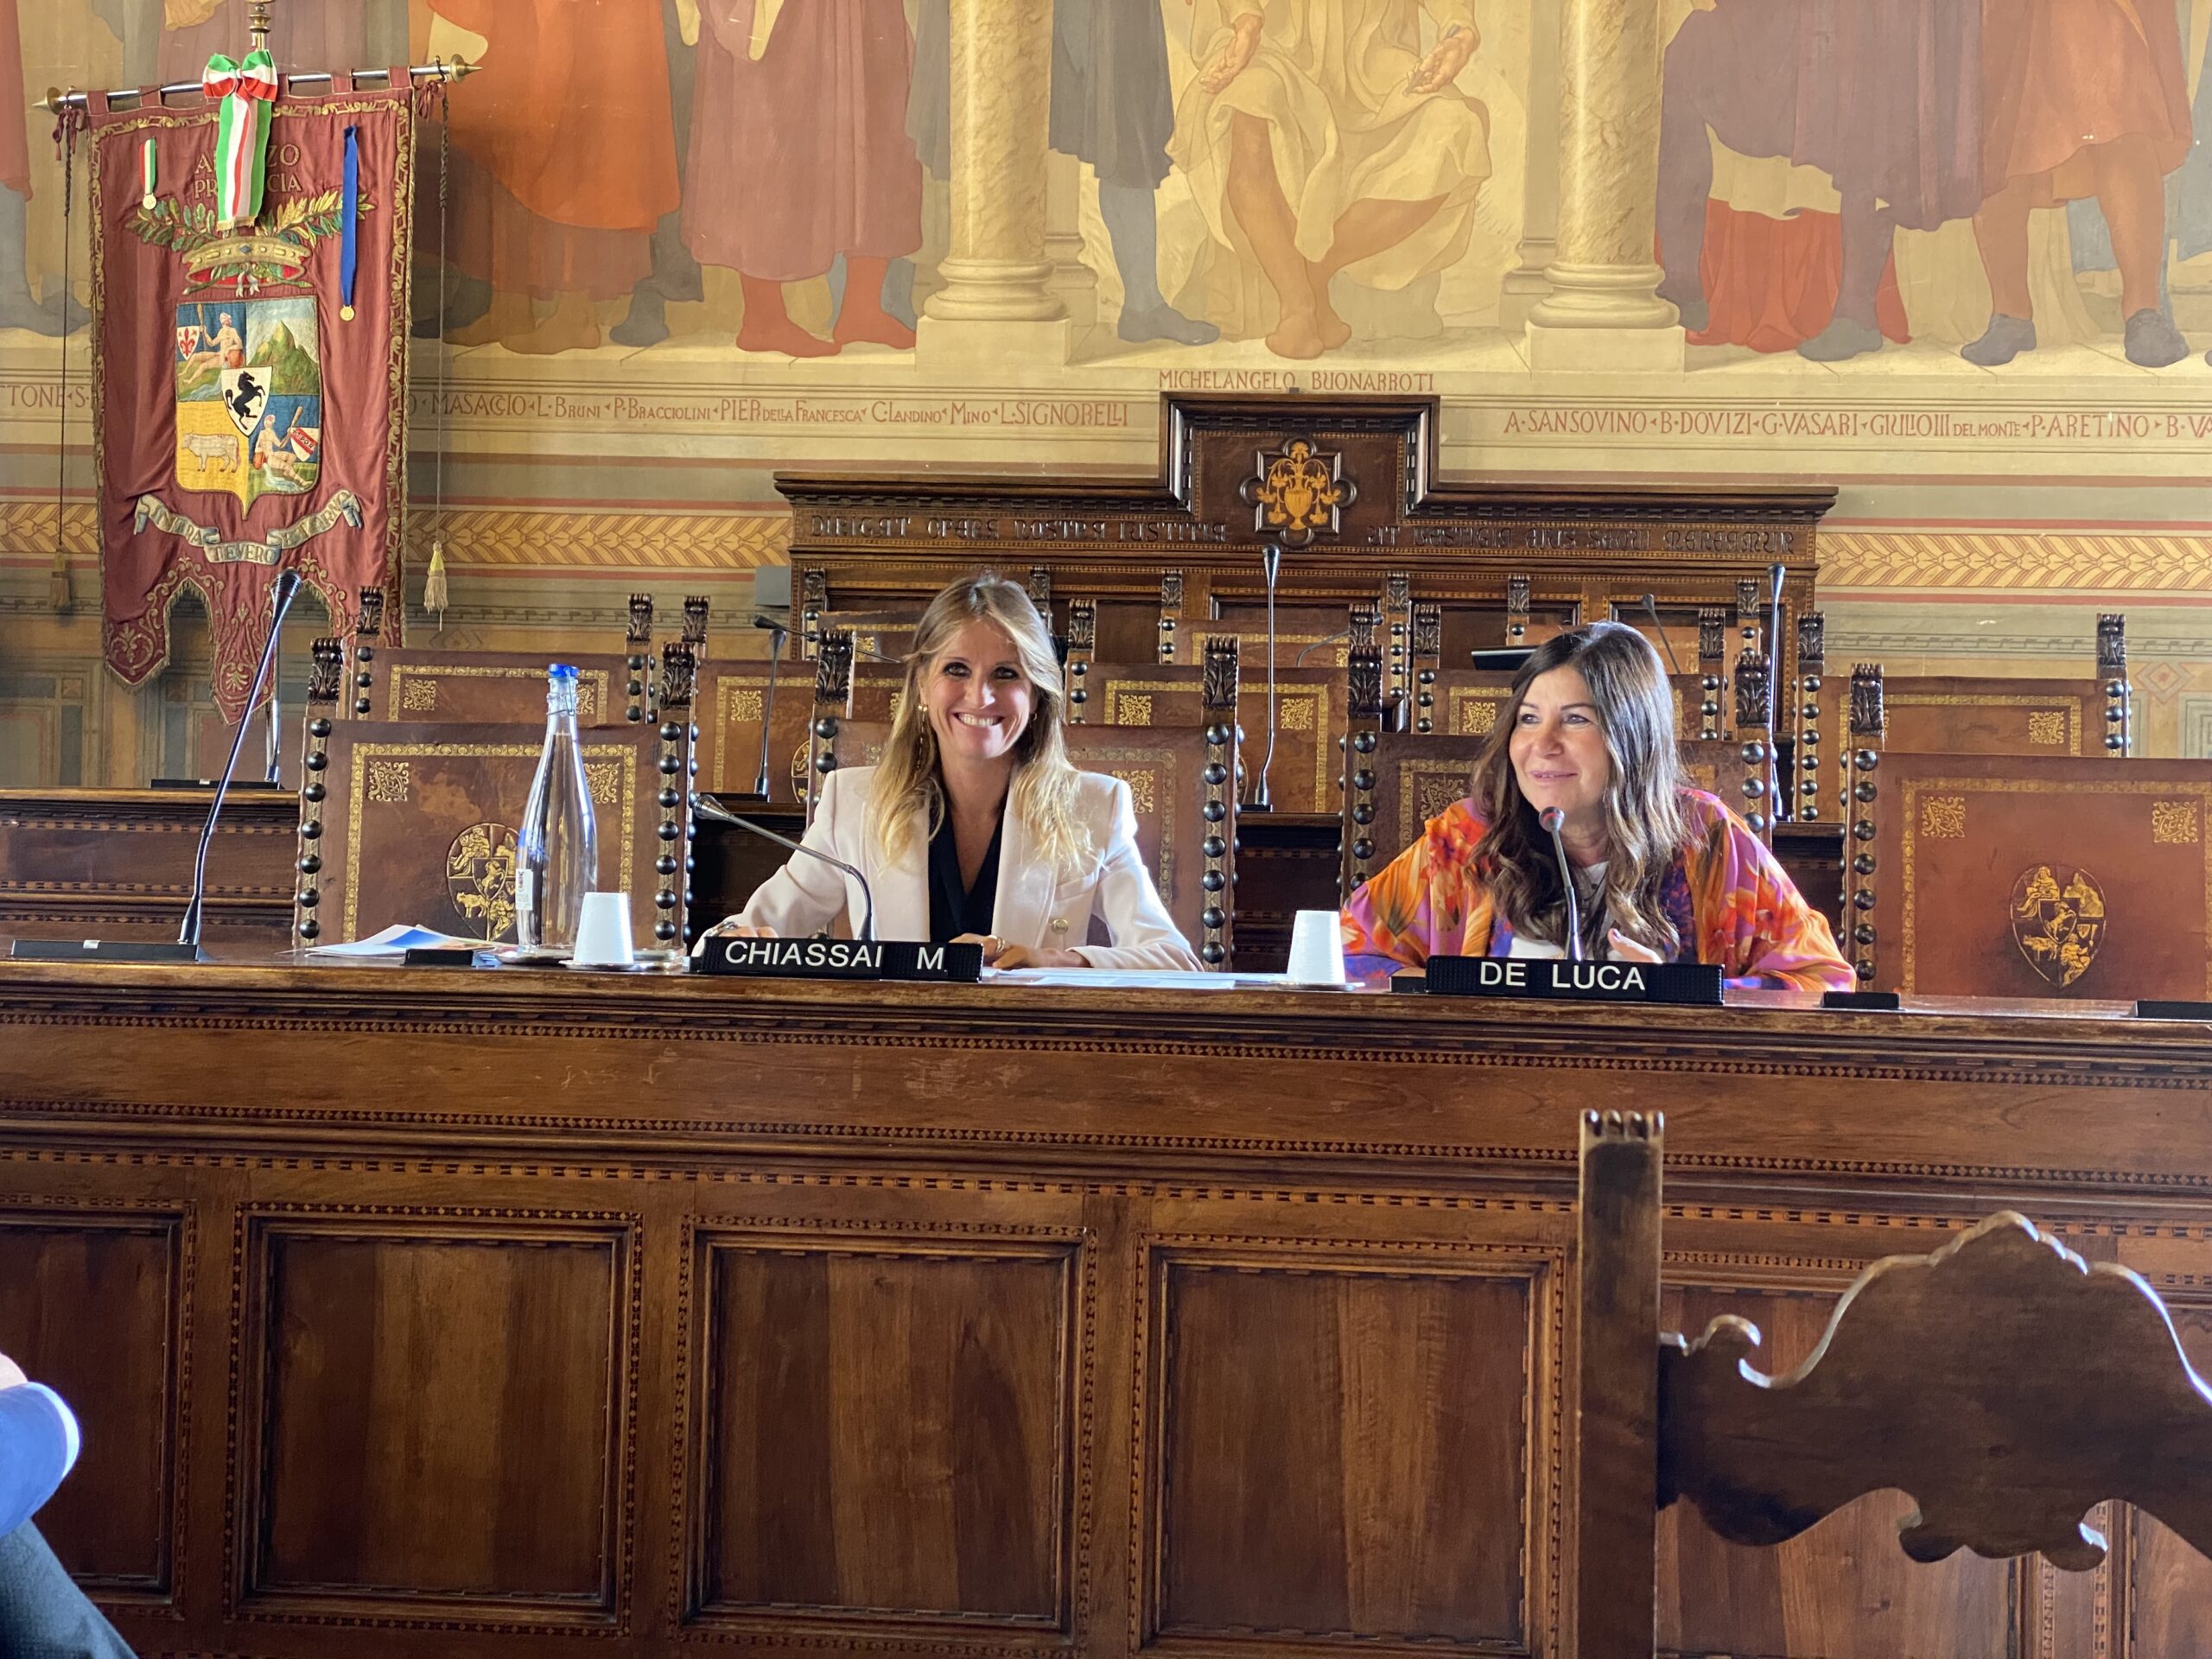 La presidente della provincia di Arezzo Silvia Chiassai Martini ed il Prefetto Maddalena De Luca incontrano le categorie economiche per la presentazione della prima comunità energetica provinciale